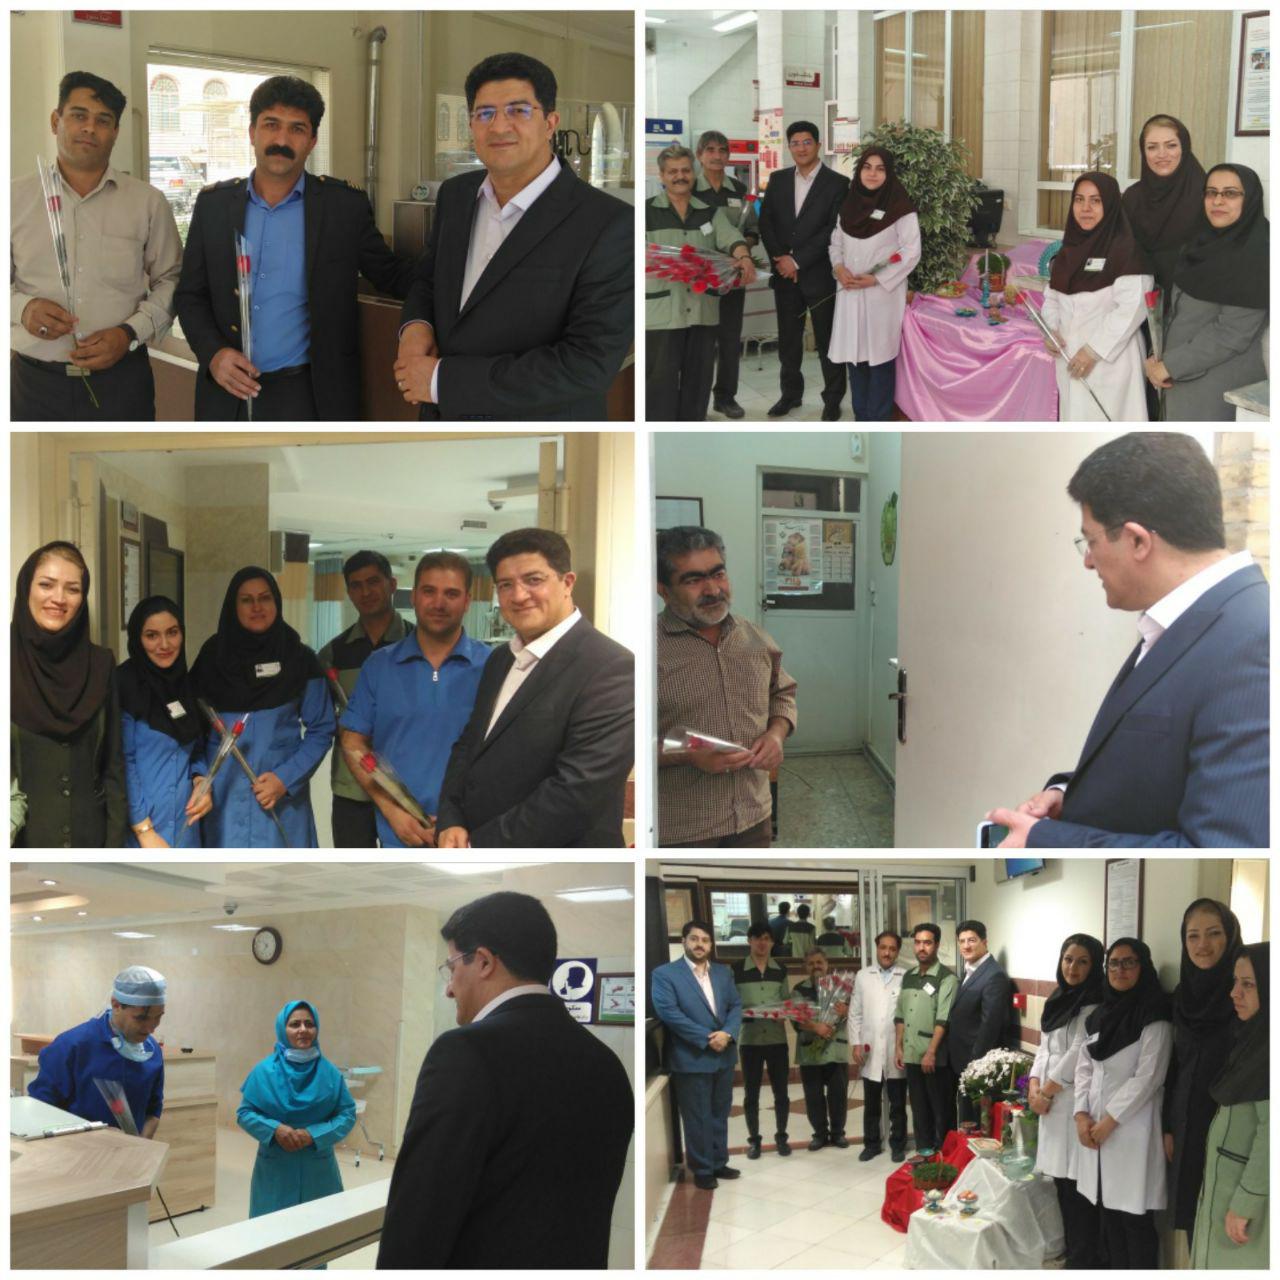 عکس: منتخبی از برگزاری مراسم و همایش های مختلف در بیمارستان سیدالشهداء یزد | بیمارستان سیدالشهداء یزد